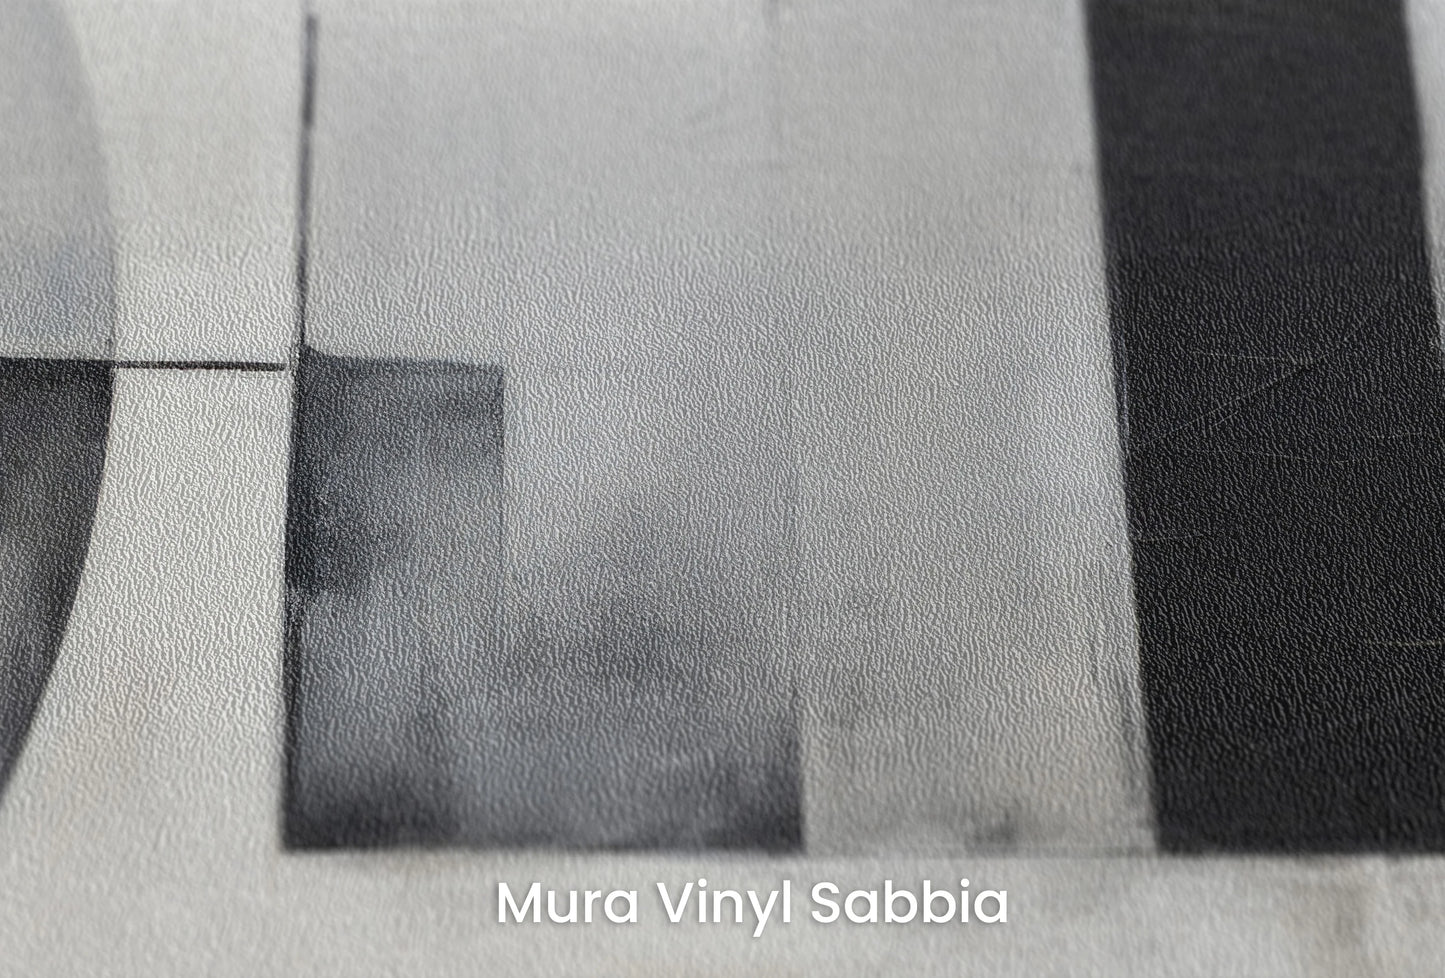 Zbliżenie na artystyczną fototapetę o nazwie Monochrome Maze na podłożu Mura Vinyl Sabbia struktura grubego ziarna piasku.